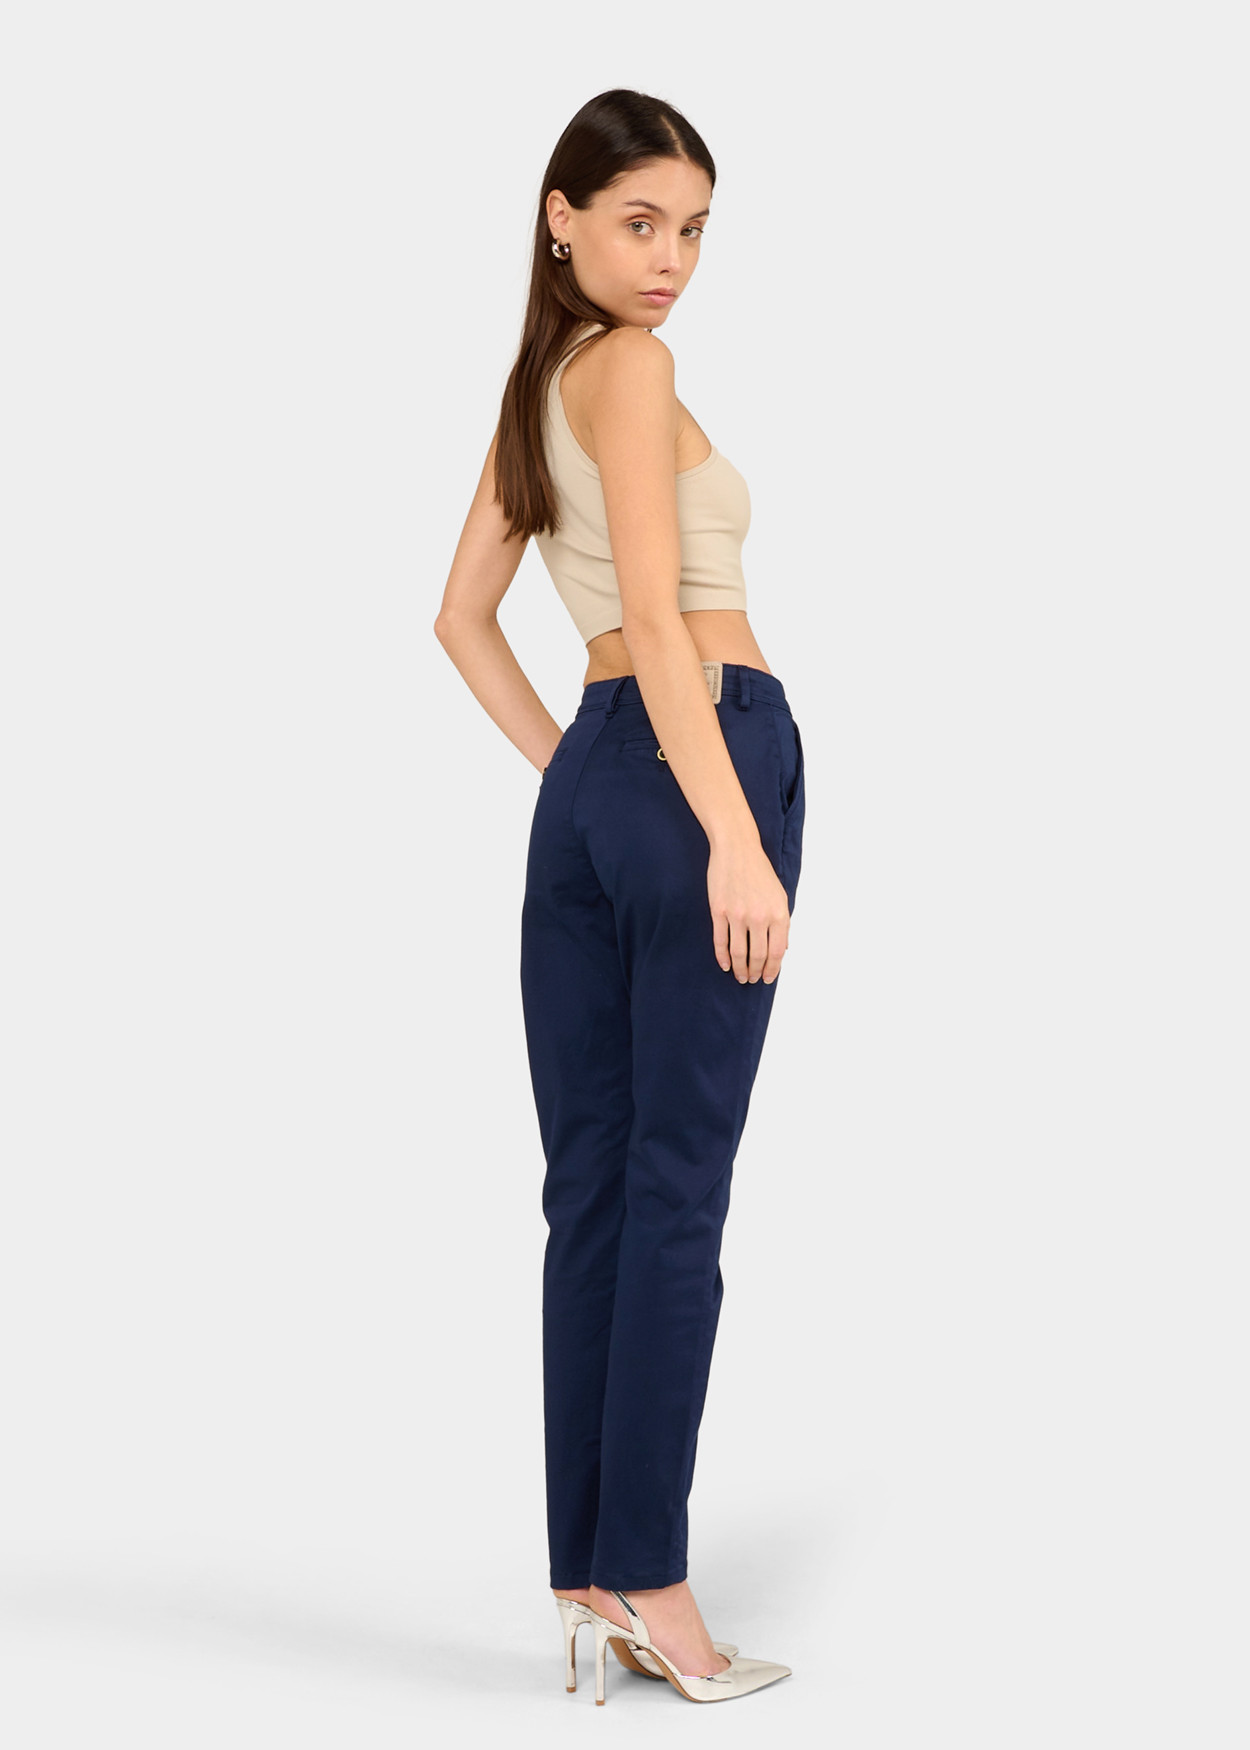 CLYDE-NECTAR - Pantalon Chino - Slim - Satin Elastique Longueur Courte | Tailles en Pouces Cimarron